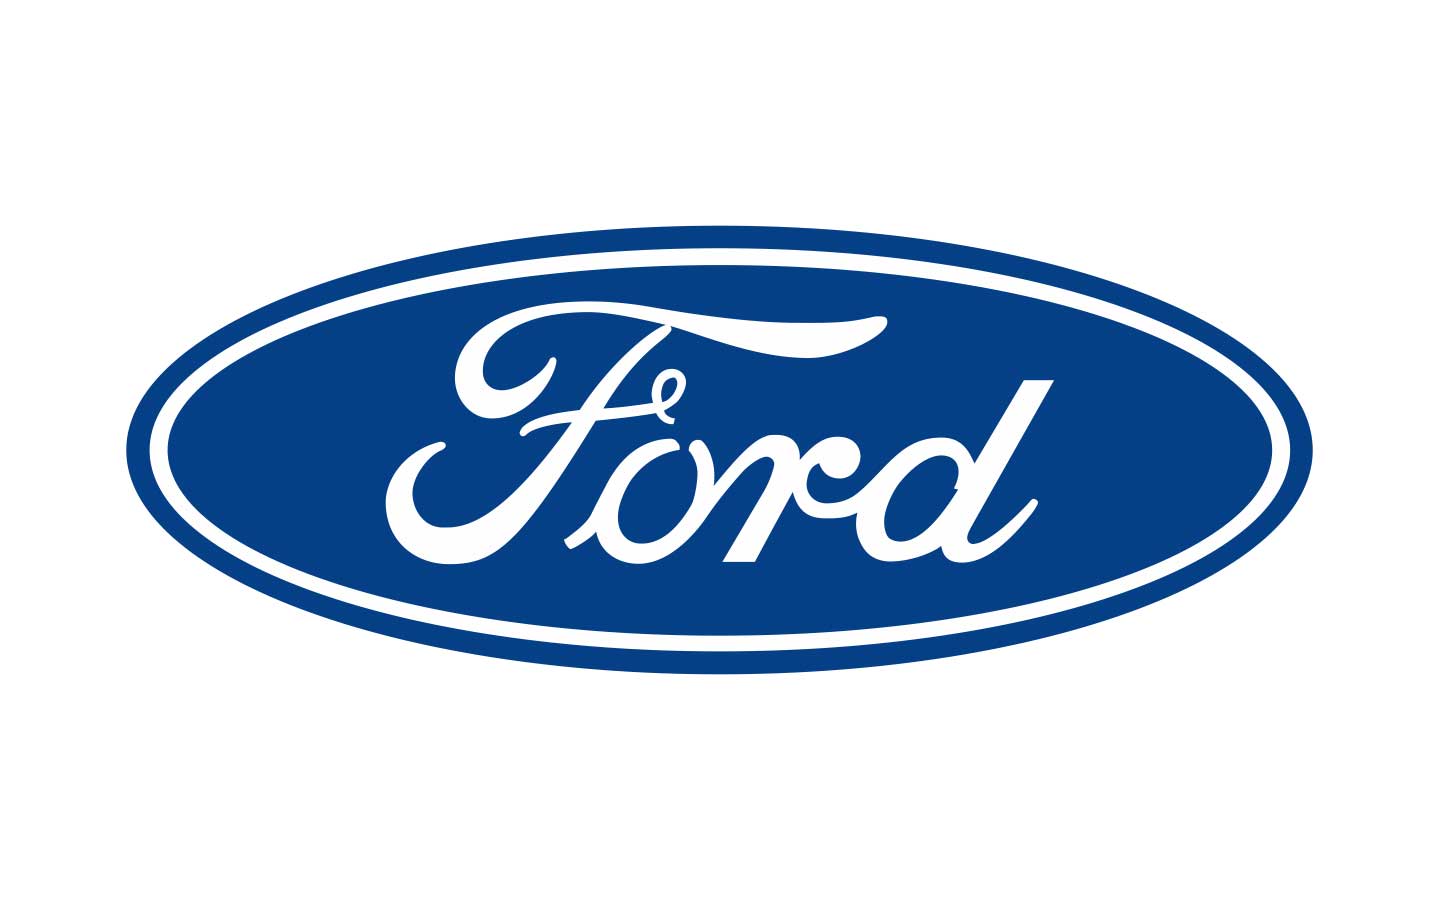 Ford-logo-1929-1440x900.jpg